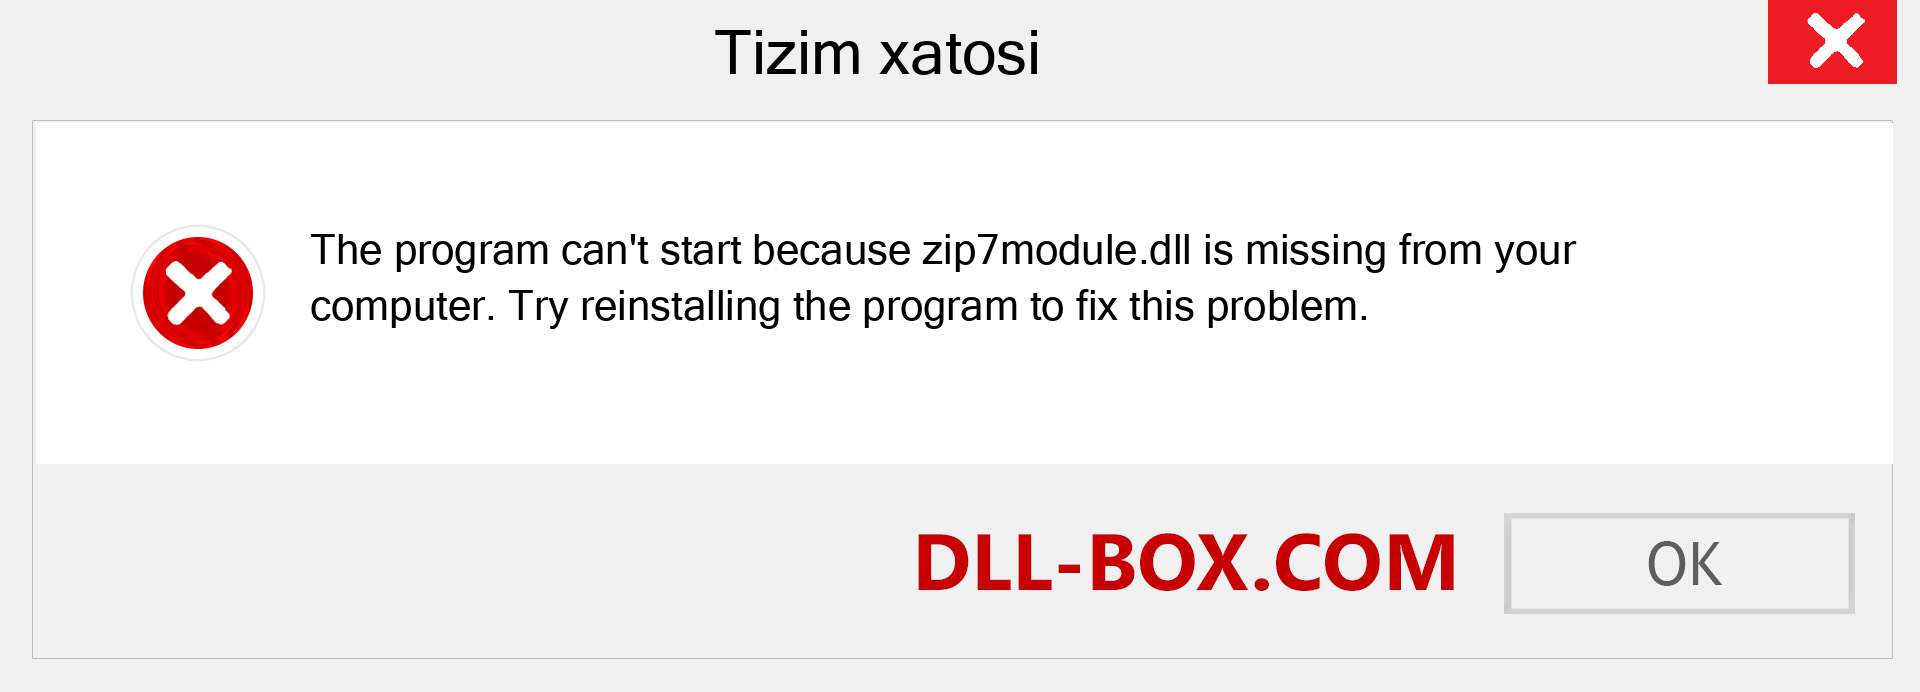 zip7module.dll fayli yo'qolganmi?. Windows 7, 8, 10 uchun yuklab olish - Windowsda zip7module dll etishmayotgan xatoni tuzating, rasmlar, rasmlar